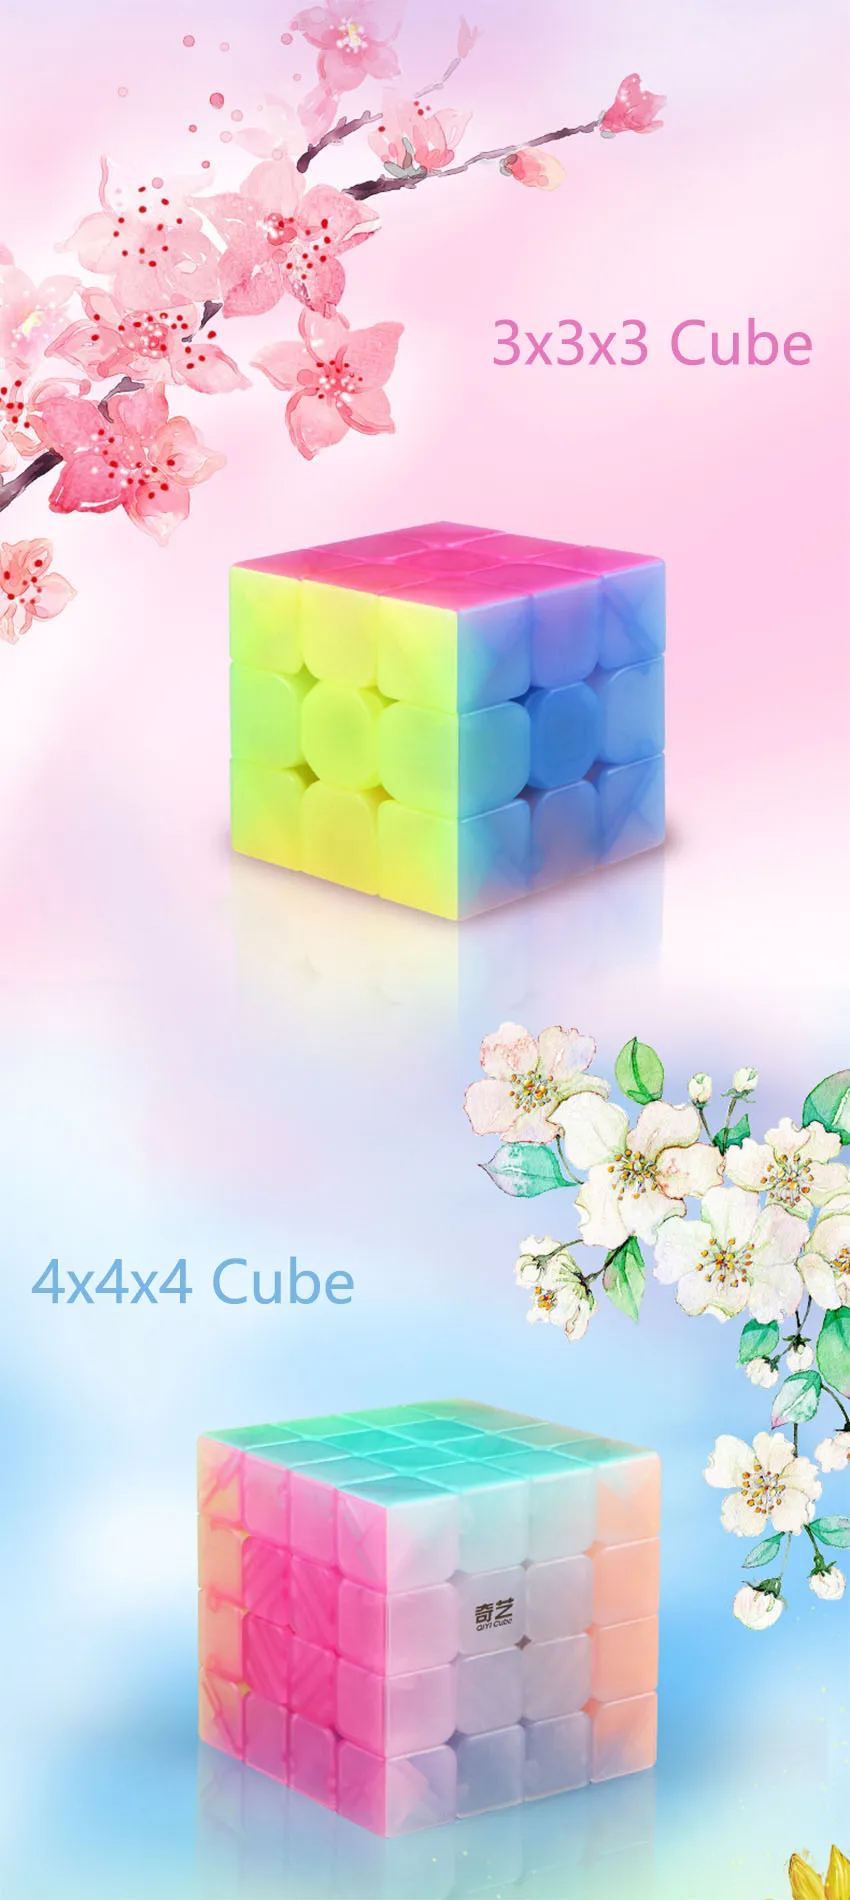 QiYi 2x2x2 профессиональный магический куб парус, быстрая скорость вращения, высококачественный Желейный куб, магический скоростной куб, игрушки для детей